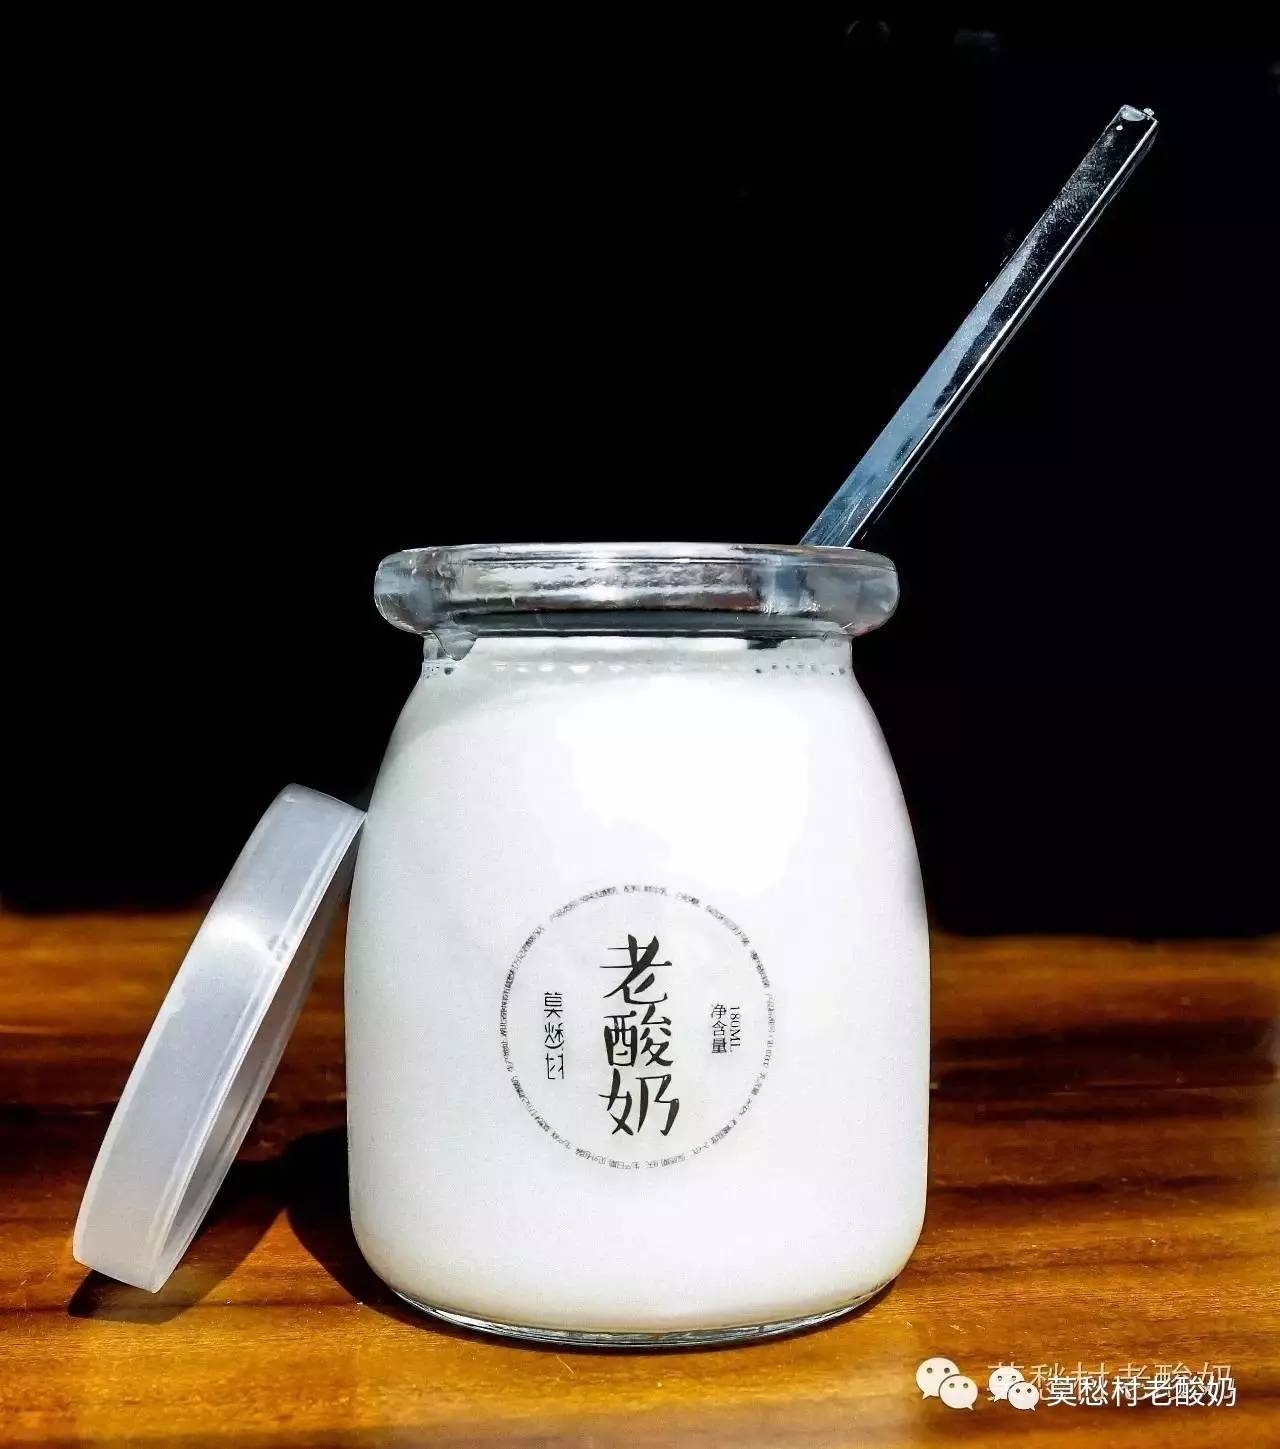 莫愁村问君老酸奶:围绕一瓶酸奶 丰富商业生态